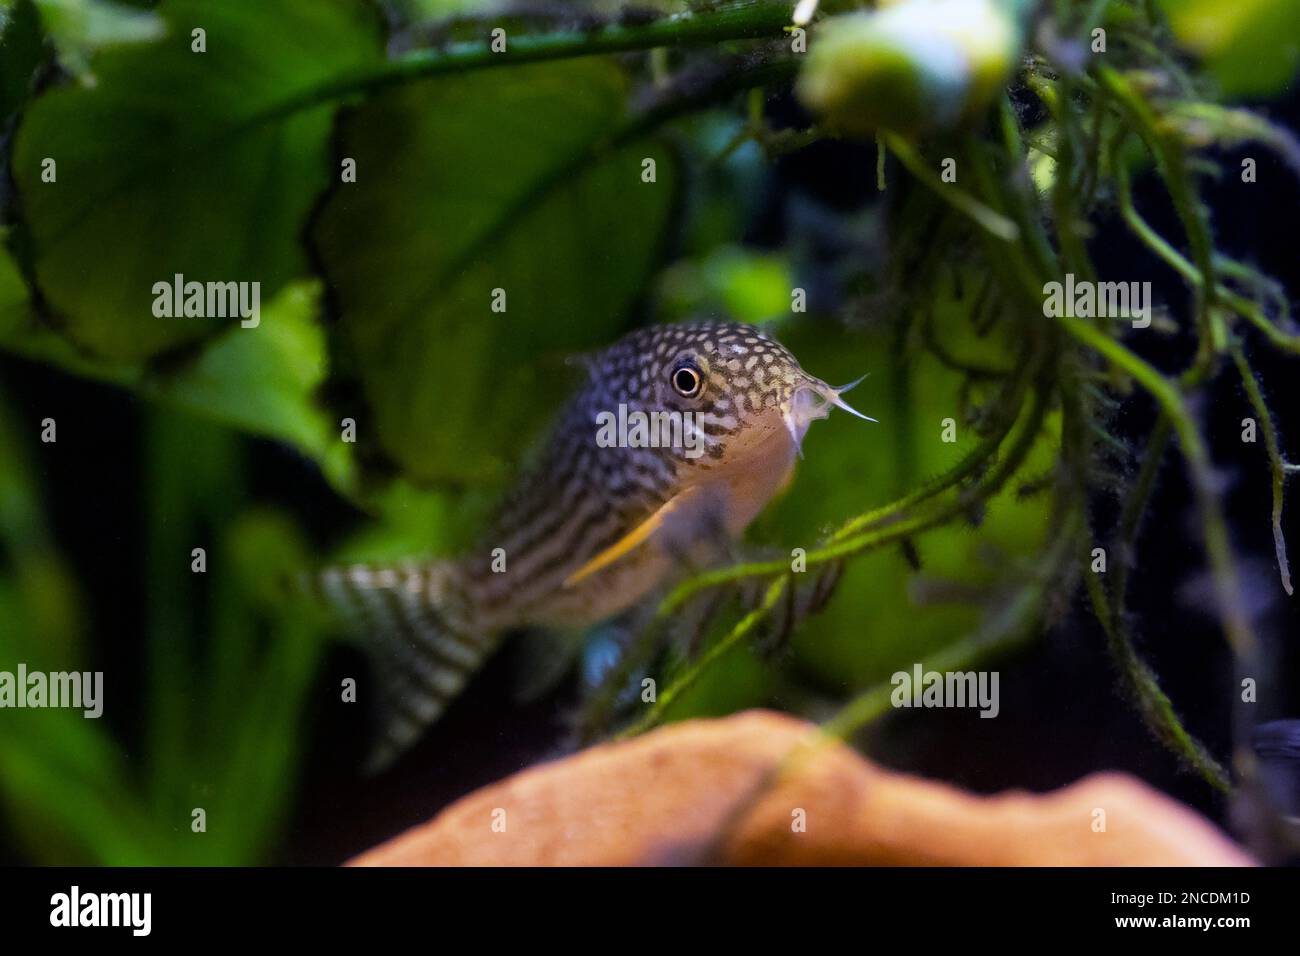 Il Corydoras haraldschultzi è un pesce di acqua dolce tropicale appartenente alle Corydoradinae. Foto Stock